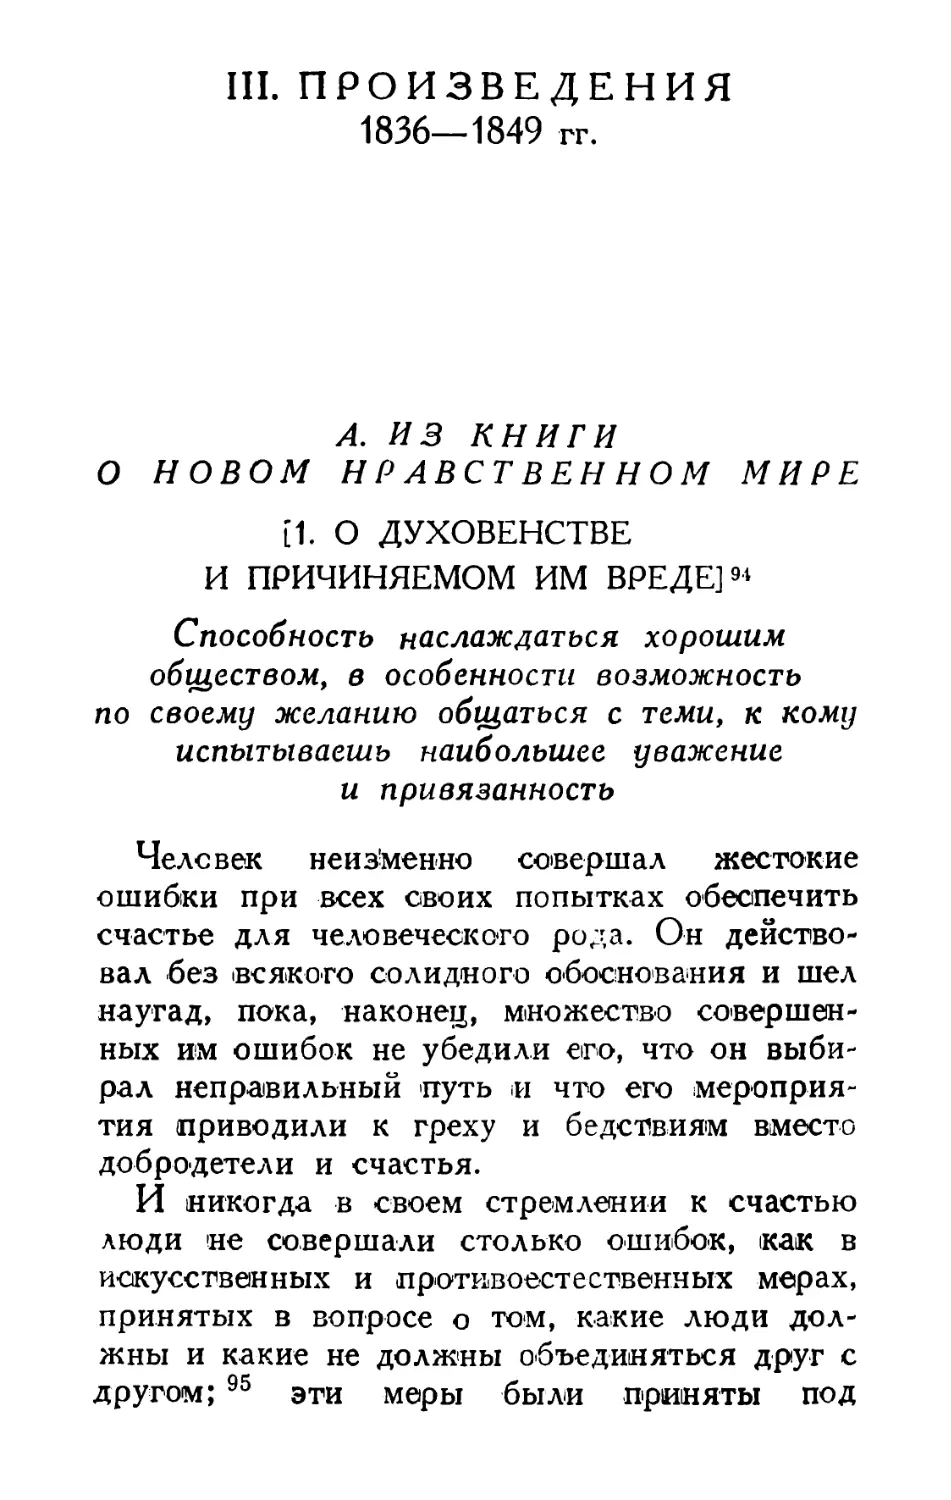 III. ПРОИЗВЕДЕНИЯ 1836-1849 гг.